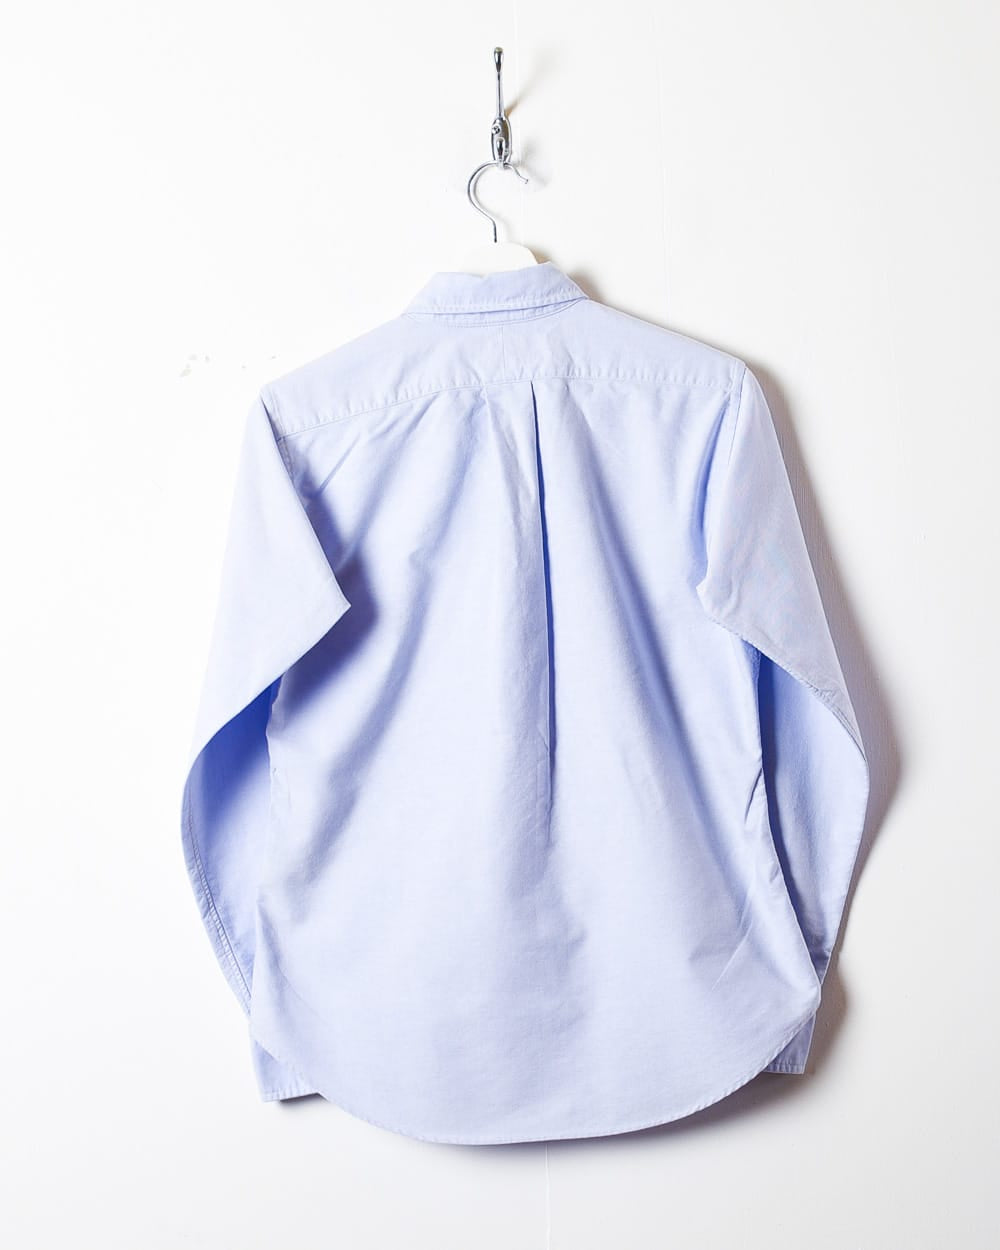 BabyBlue Polo Ralph Lauren Shirt - X-Small